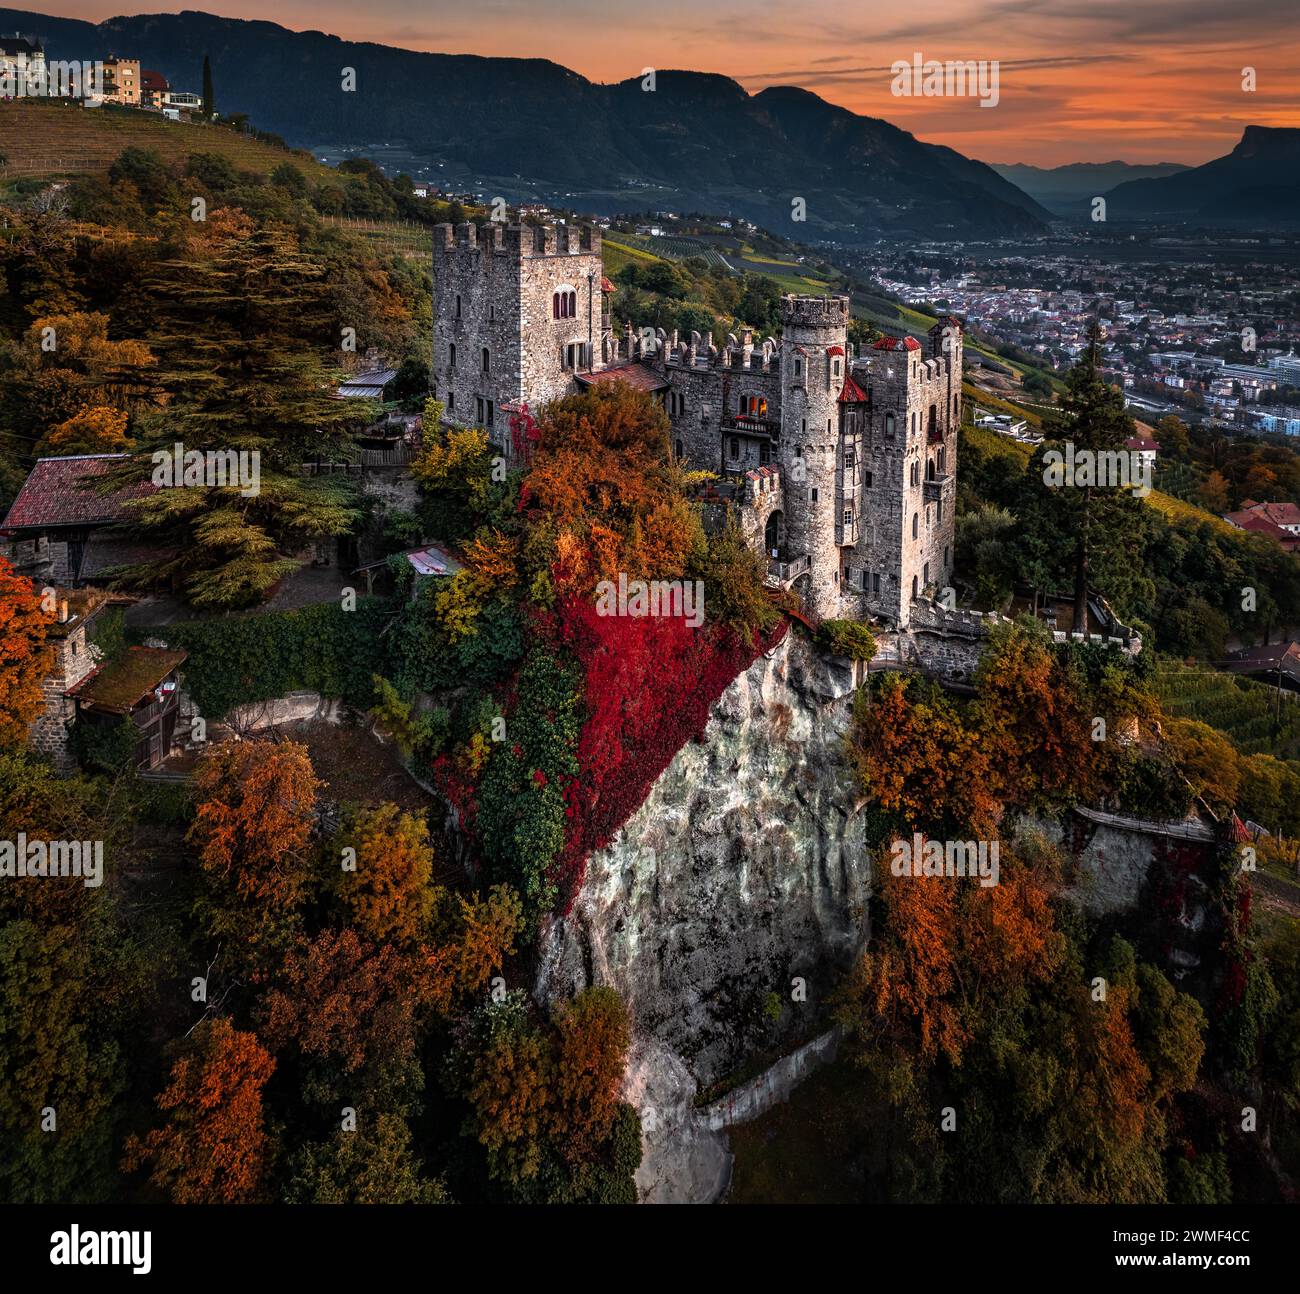 Merano, Italien - Panoramablick aus der Vogelperspektive auf das berühmte Schloss Brunnenburg (Castel Tirolo) mit der Stadt Merano, den italienischen Dolomiten und der bunten Sonne Stockfoto